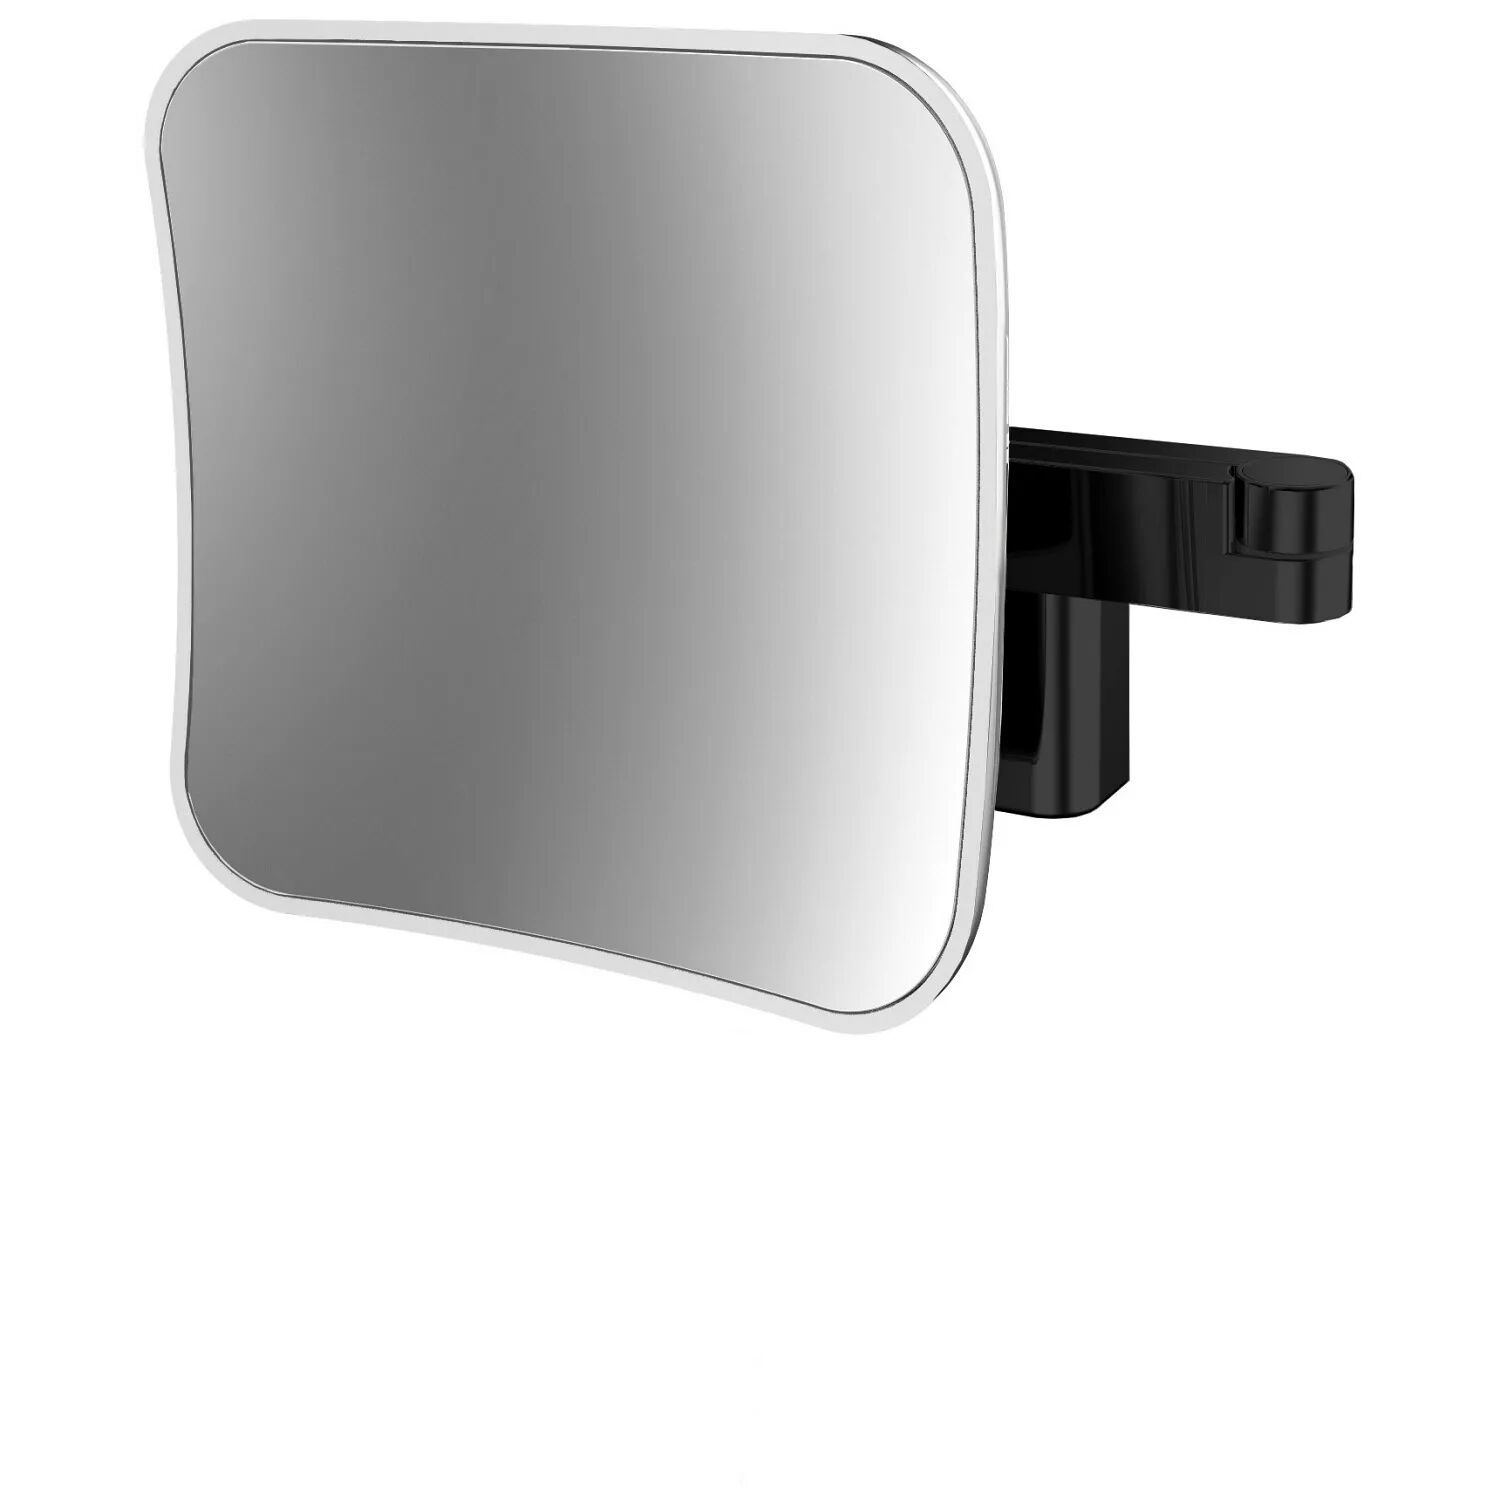 Emco Evo LED Rasier- und Kosmetikspiegel mit Direktanschluss und emco light System mit 5-fach Vergrößerung Evo H: 20,9 B: 20,9 cm